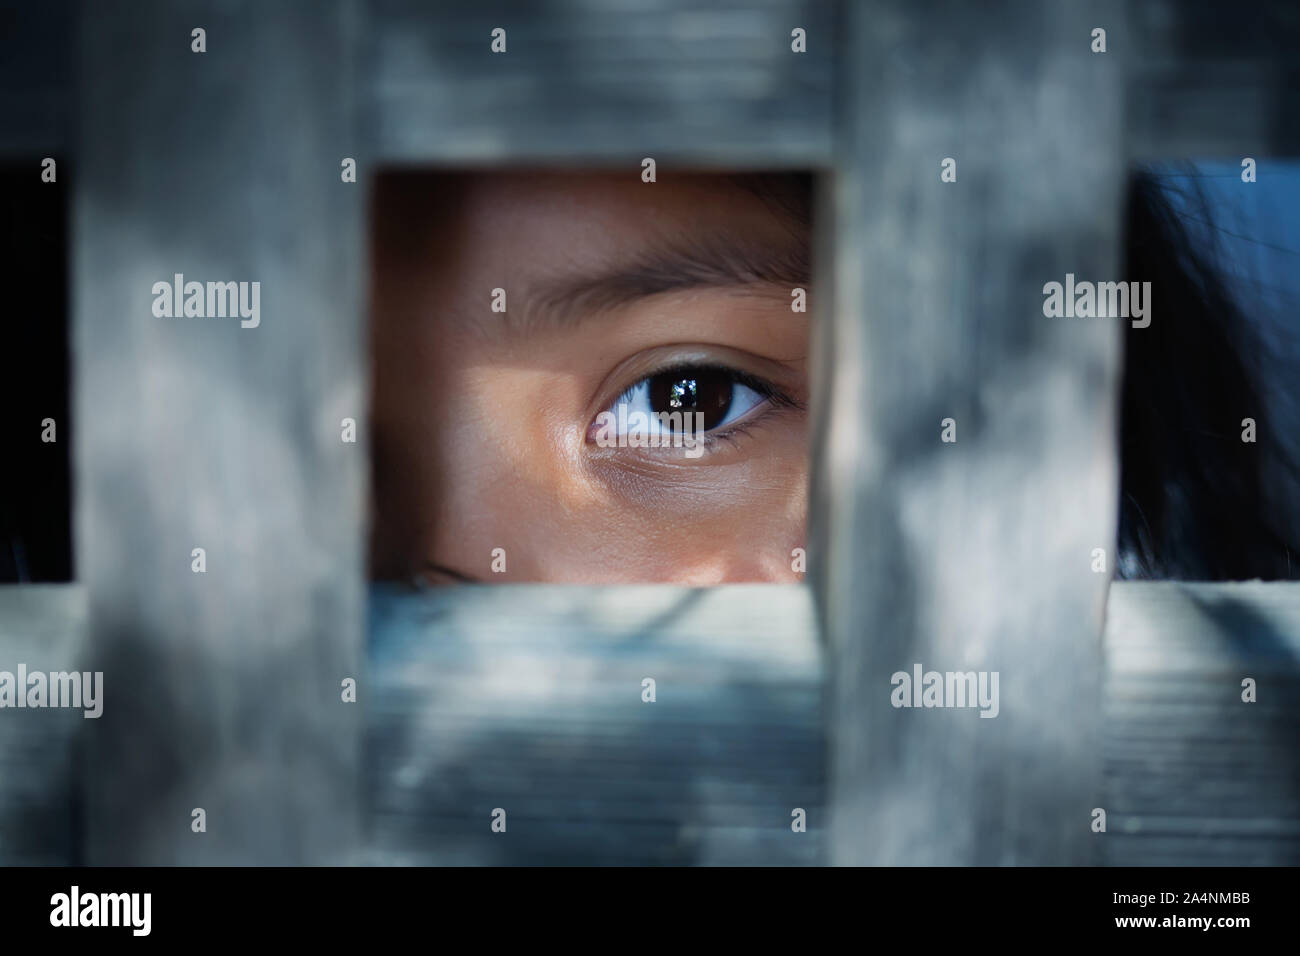 Le regard vide de des yeux d'enfant qui se tient debout derrière ce qui semble être une cage en bois pour véhiculer la captivité, ou servante. Banque D'Images